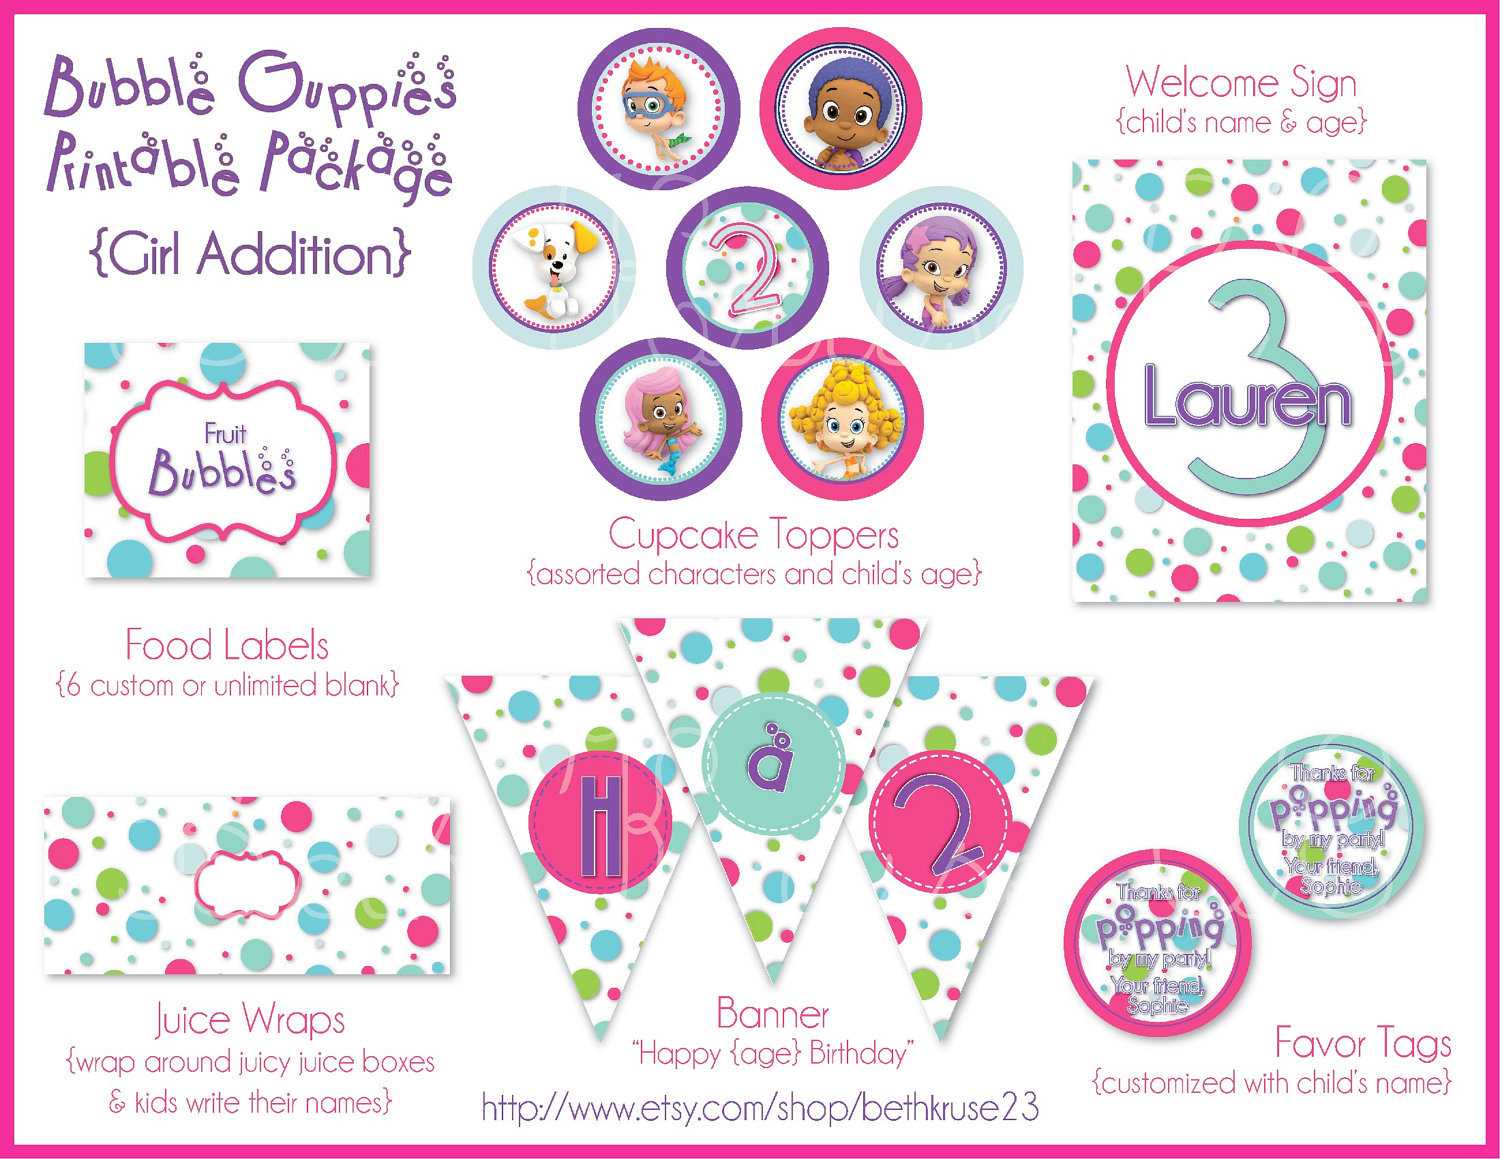 Free Bubble Guppies Invitation Template ] – Bubble Guppies With Bubble Guppies Birthday Banner Template